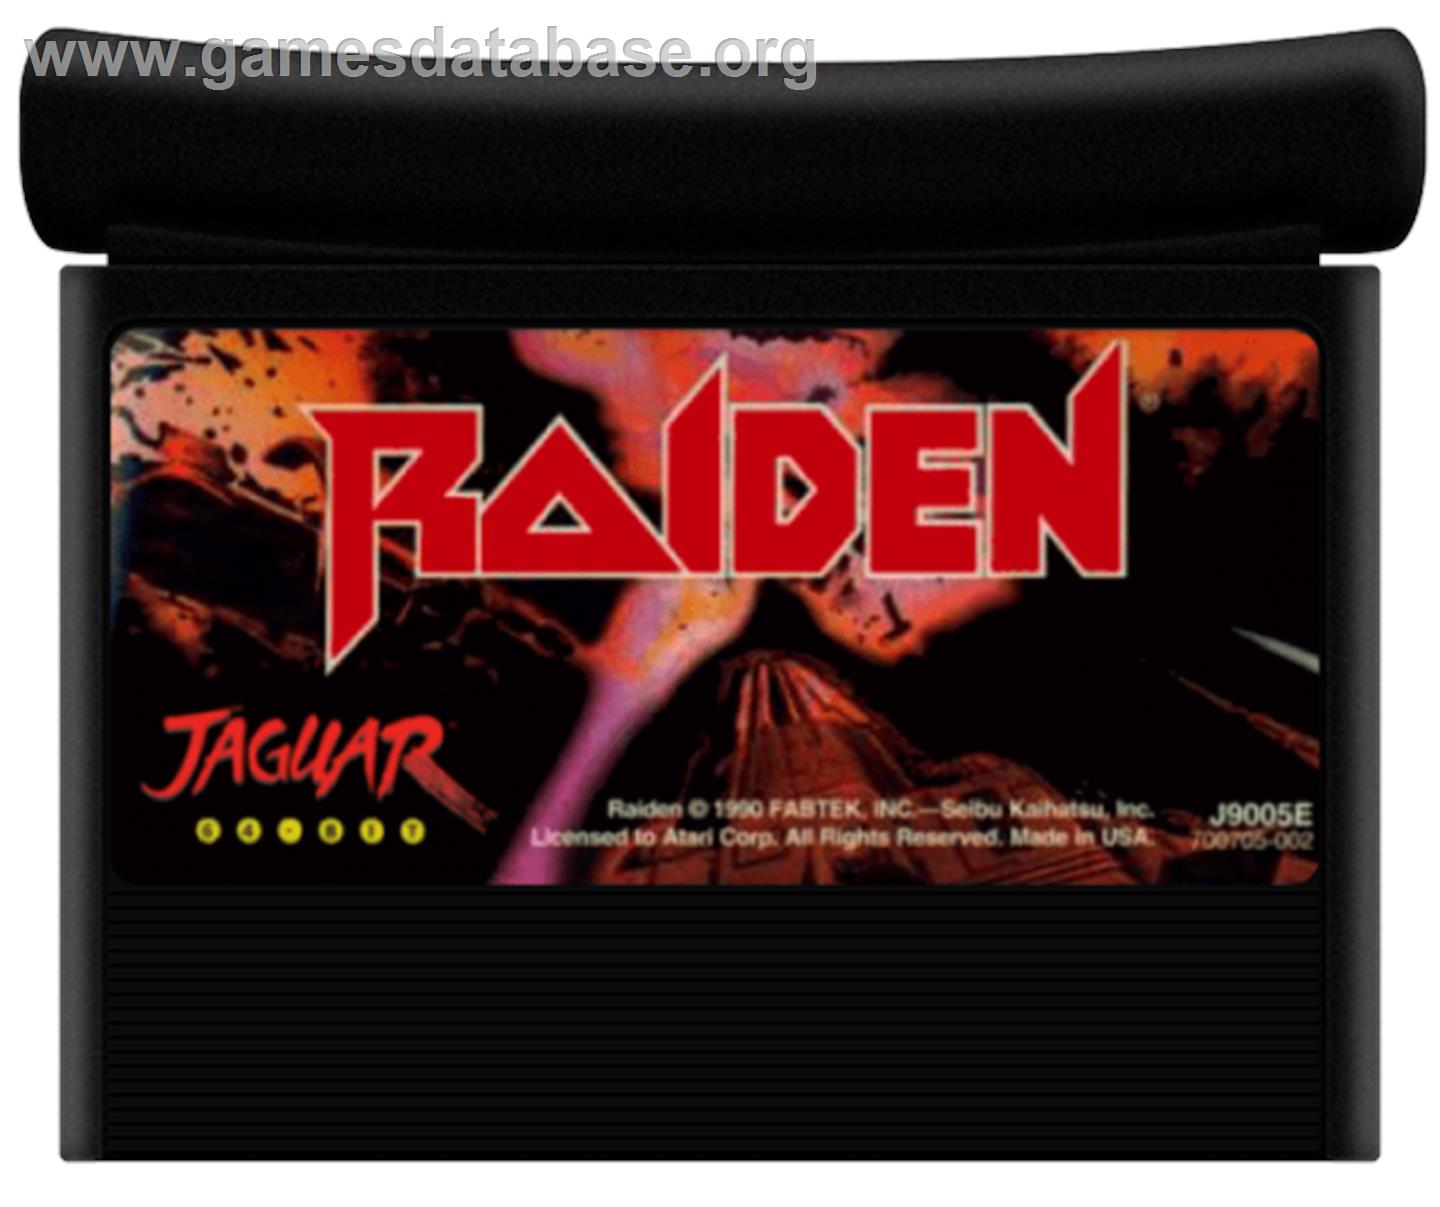 Raiden - Atari Jaguar - Artwork - Cartridge